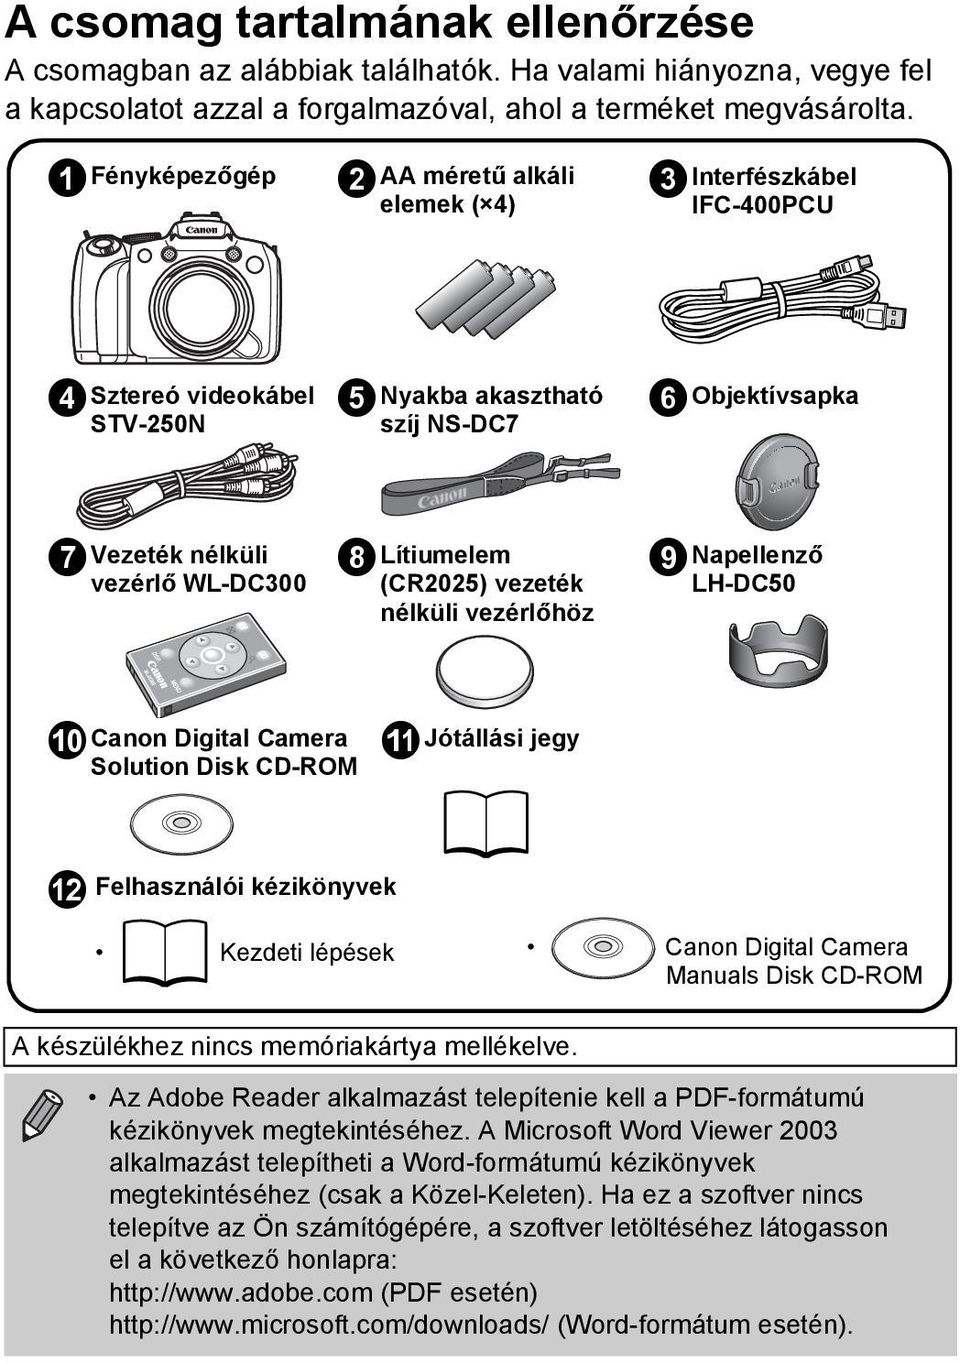 (CR2025) vezeték nélküli vezérlőhöz inapellenző LH-DC50 j Canon Digital Camera Solution Disk CD-ROM k Jótállási jegy l Felhasználói kézikönyvek Kezdeti lépések Canon Digital Camera Manuals Disk